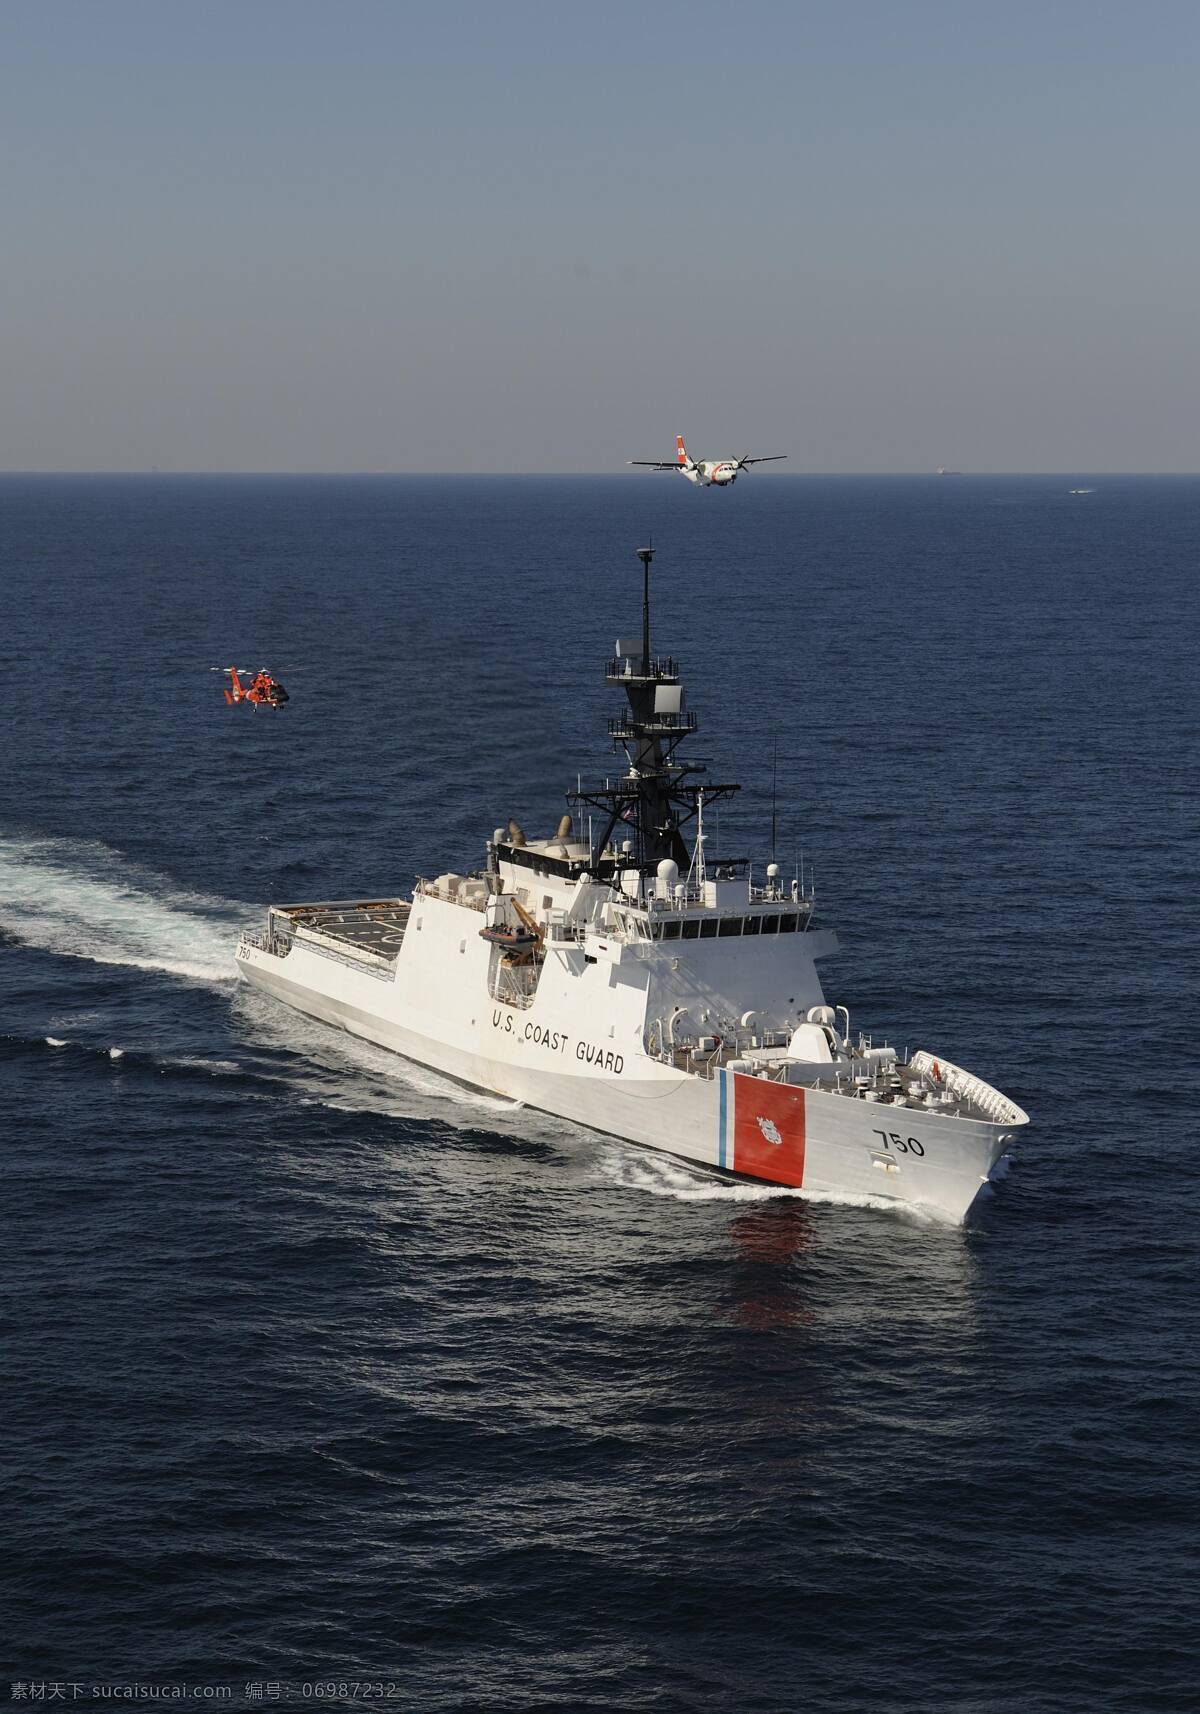 美国 国家安全 巡防 舰 海岸警卫队 火炮 海军 执法船 舰船 海洋 领海 工业 船舶 军事 军事武器 现代科技